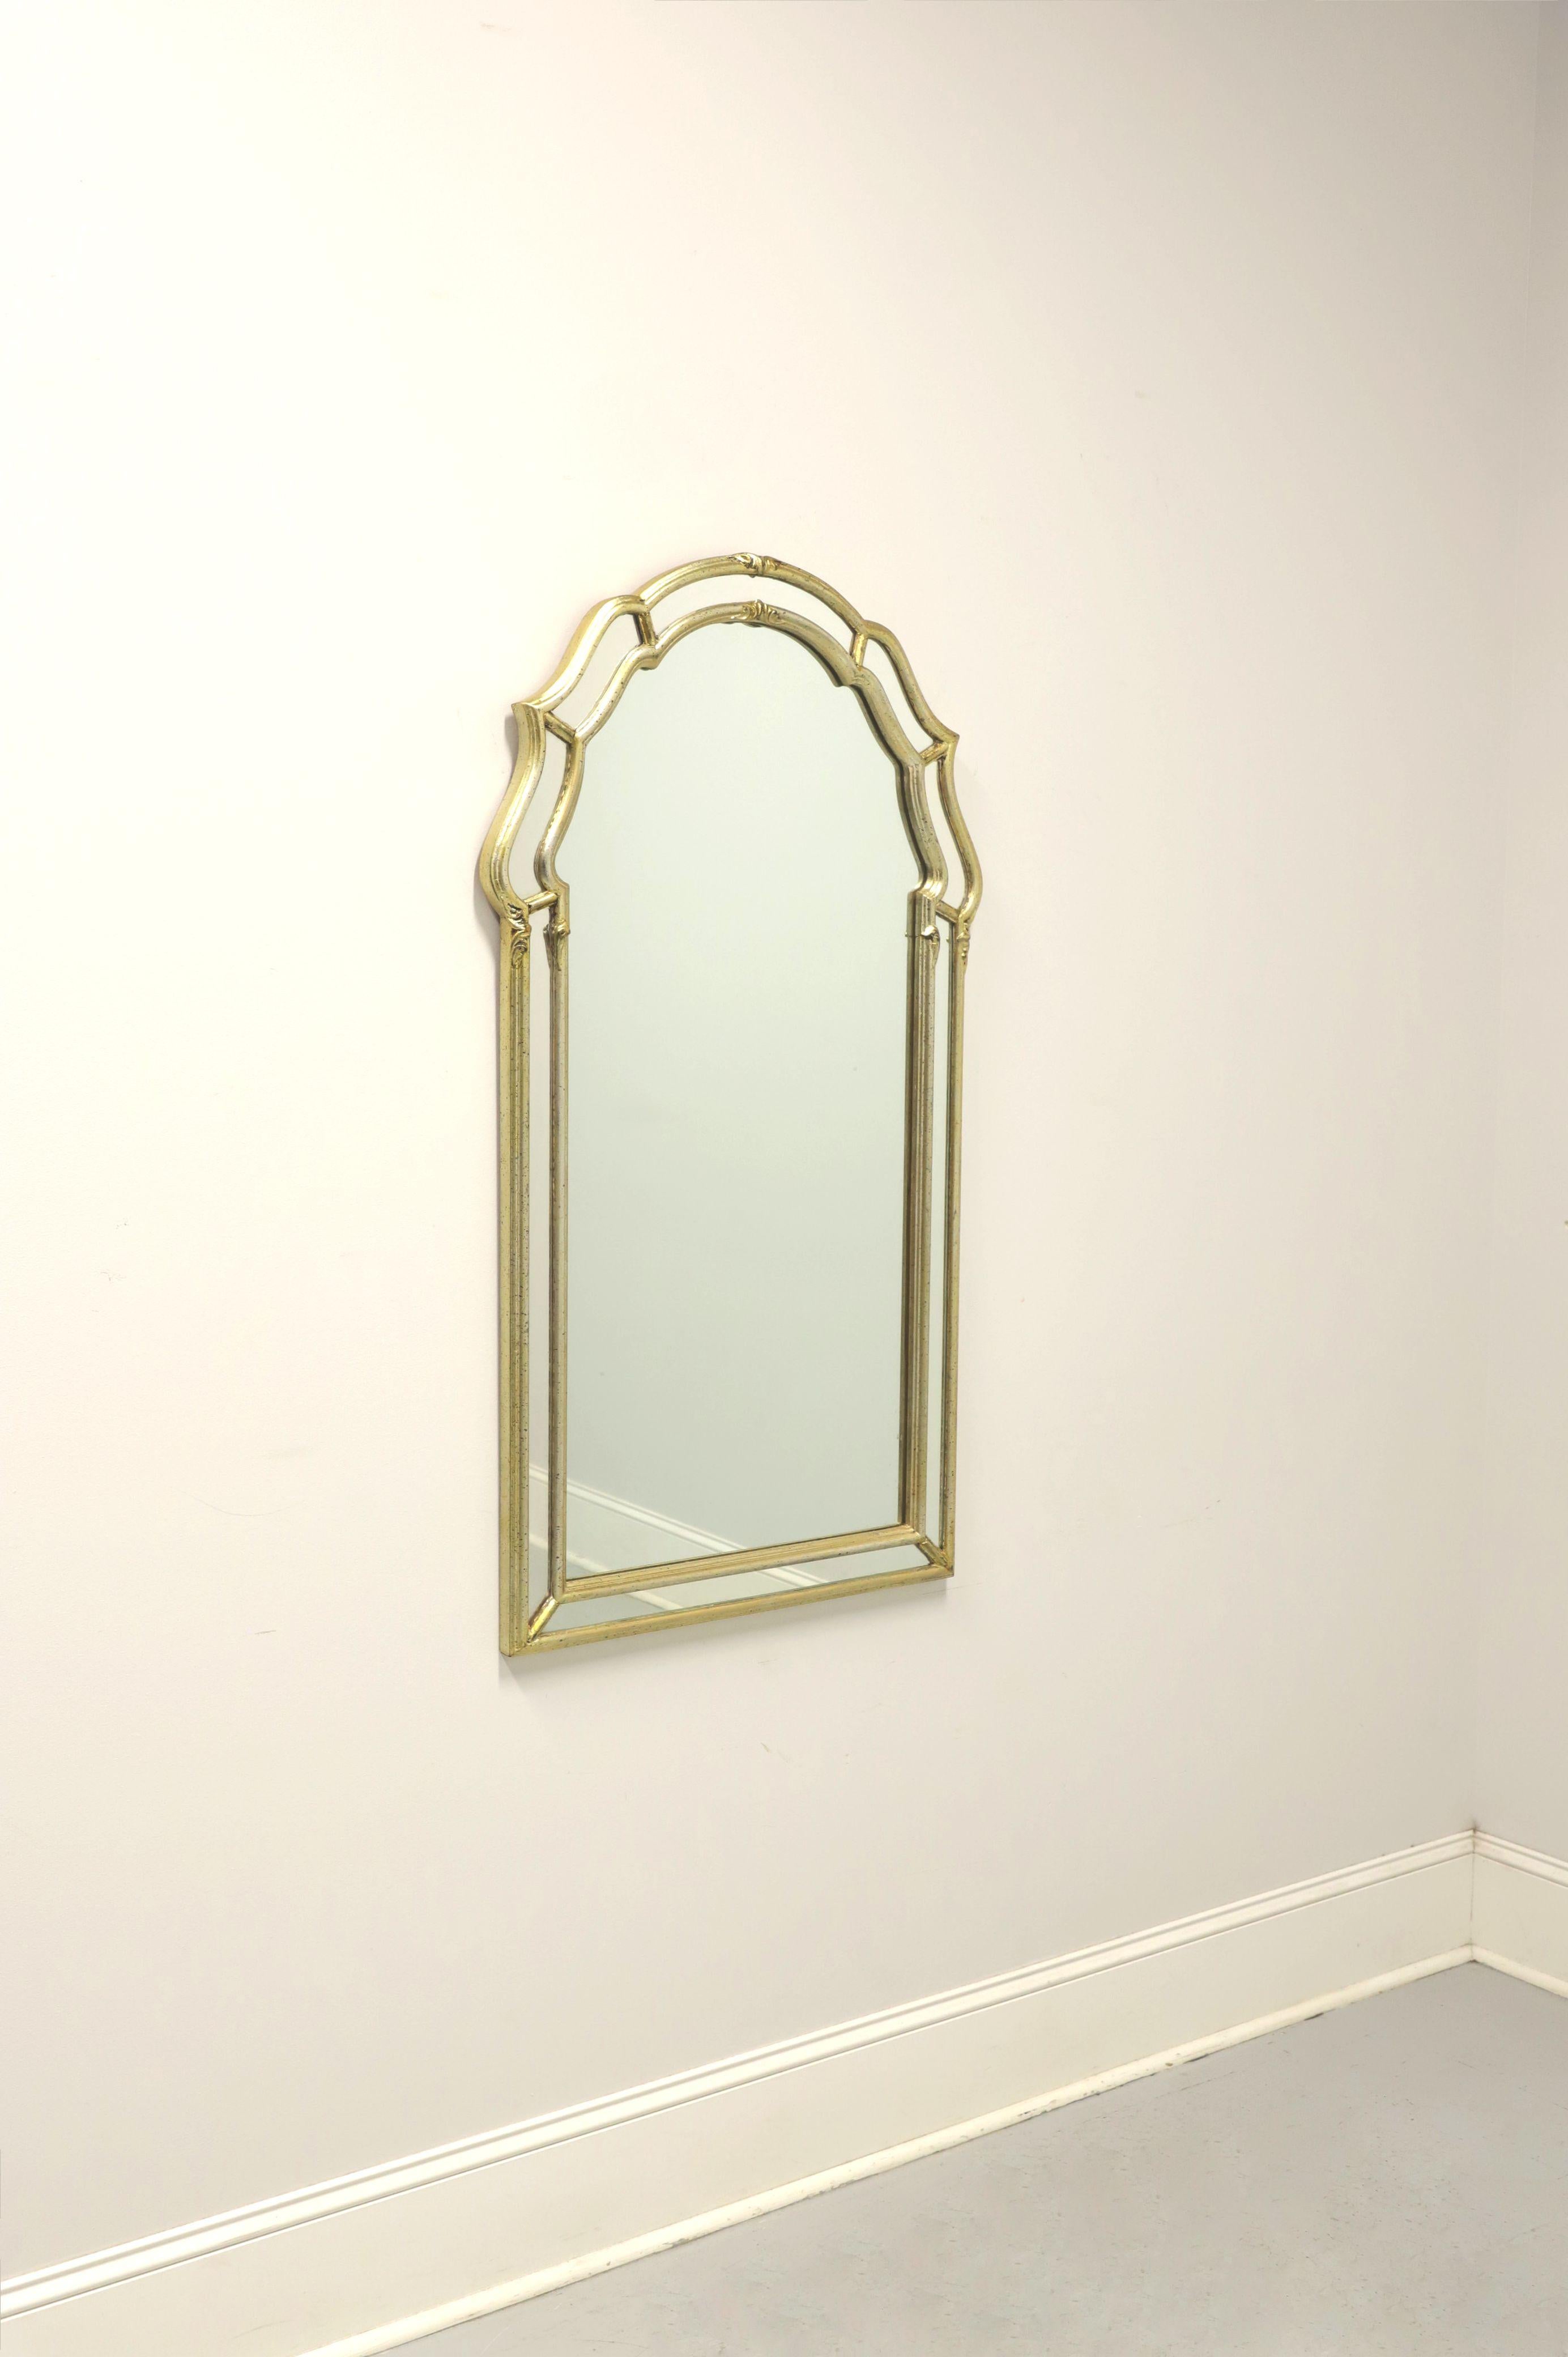 Un miroir mural de style Régence italienne, sans marque. Verre miroir dans un cadre en bois massif peint en or. Il présente un sommet arqué avec des bandes de miroirs entourant les bords extérieurs. Fabriqué en Italie, au milieu du 20e siècle.